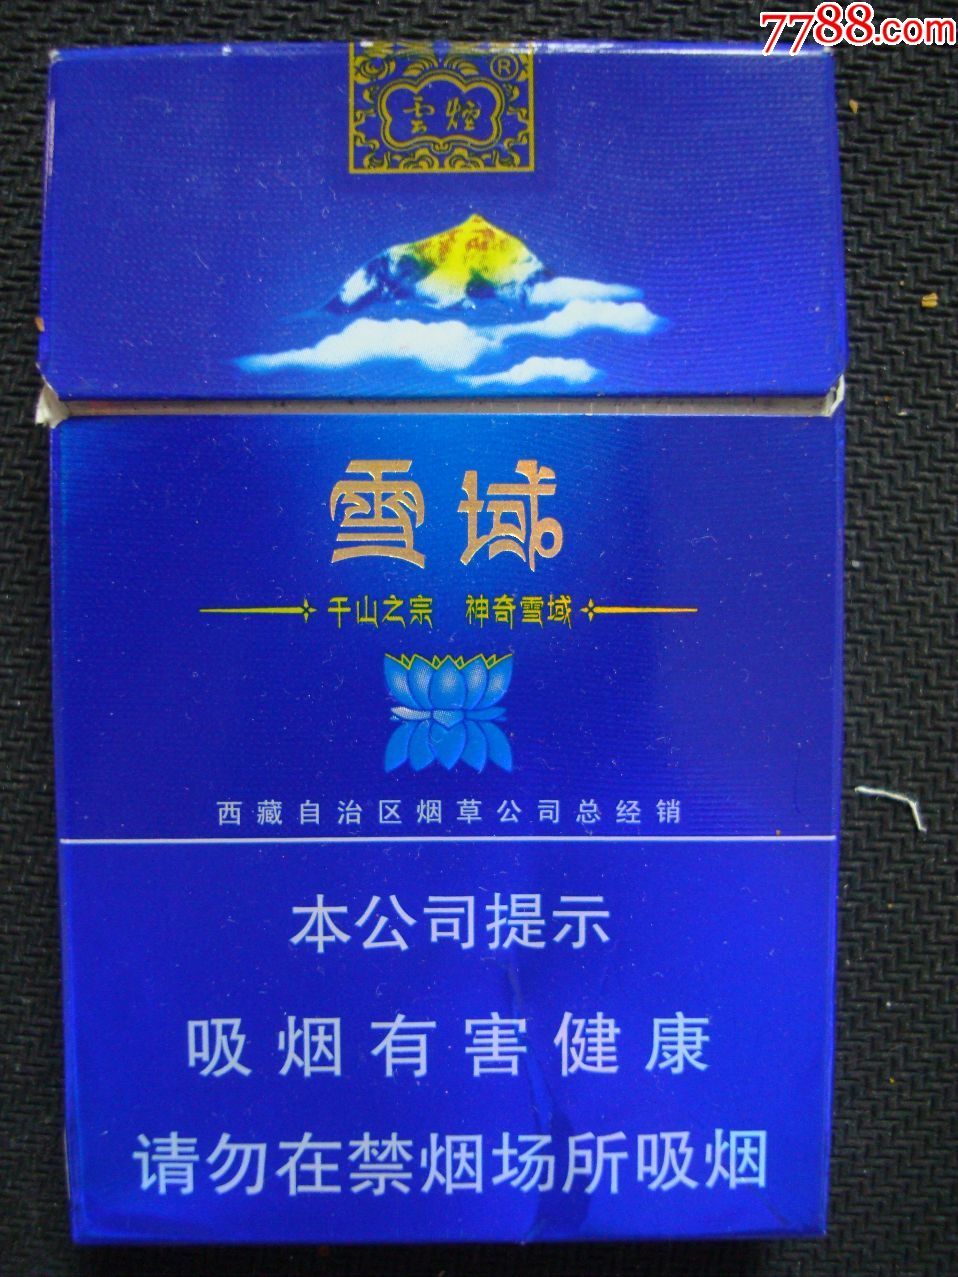 云烟〔雪域―西藏自治区烟草公司总经销